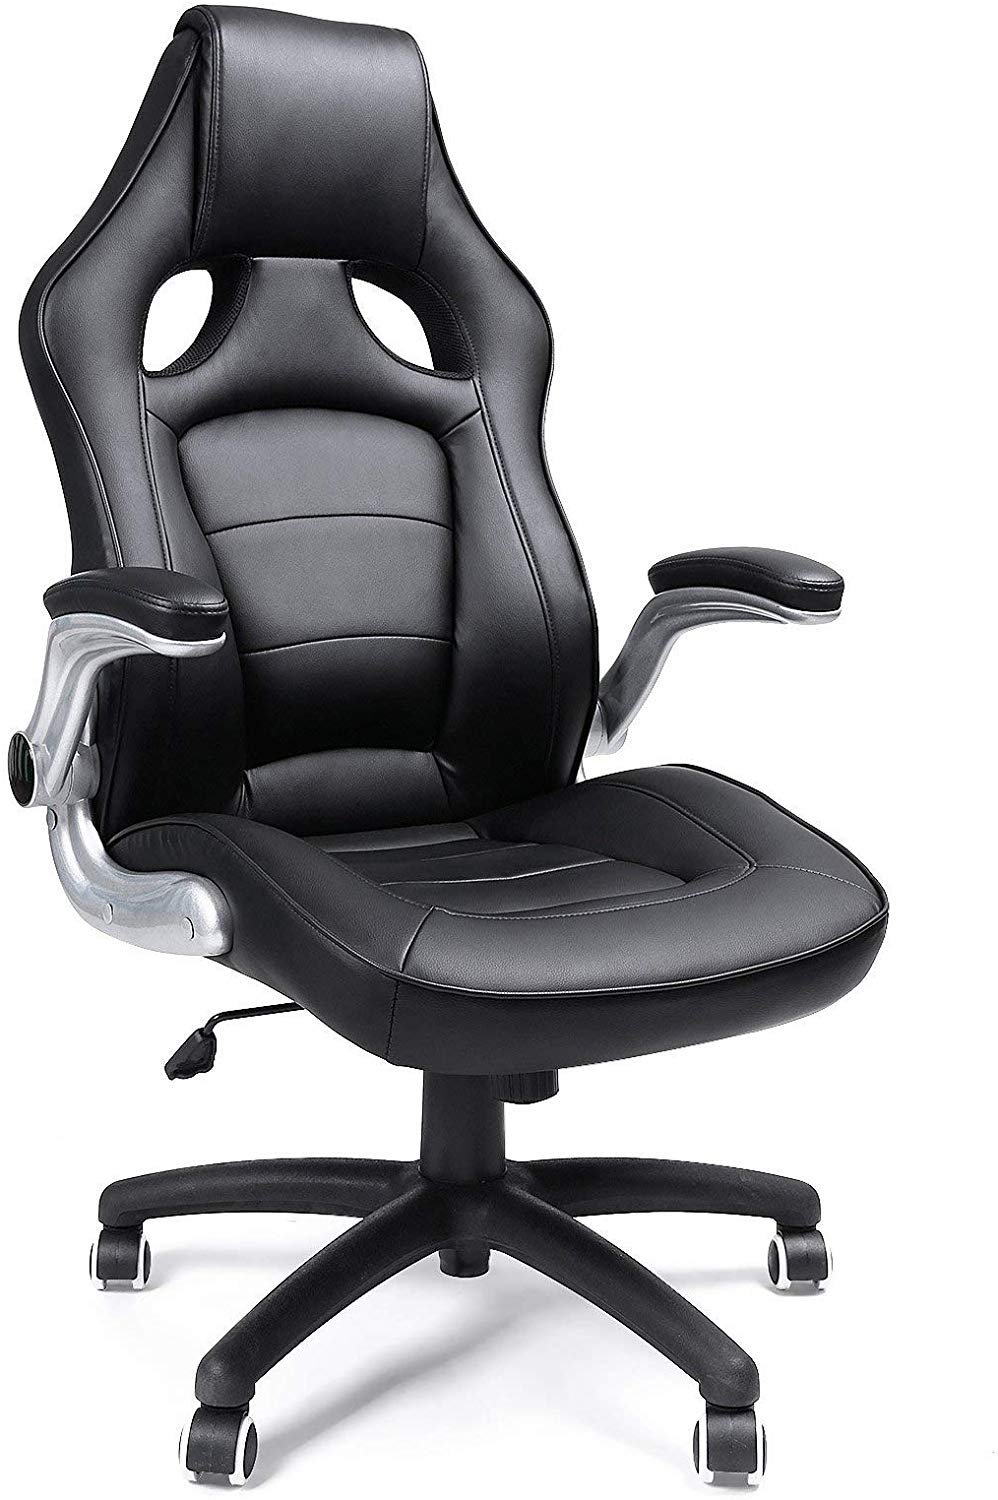 Kancelářská židle Racing III Black, pro PC stoly, racing design, nosnost 150kg